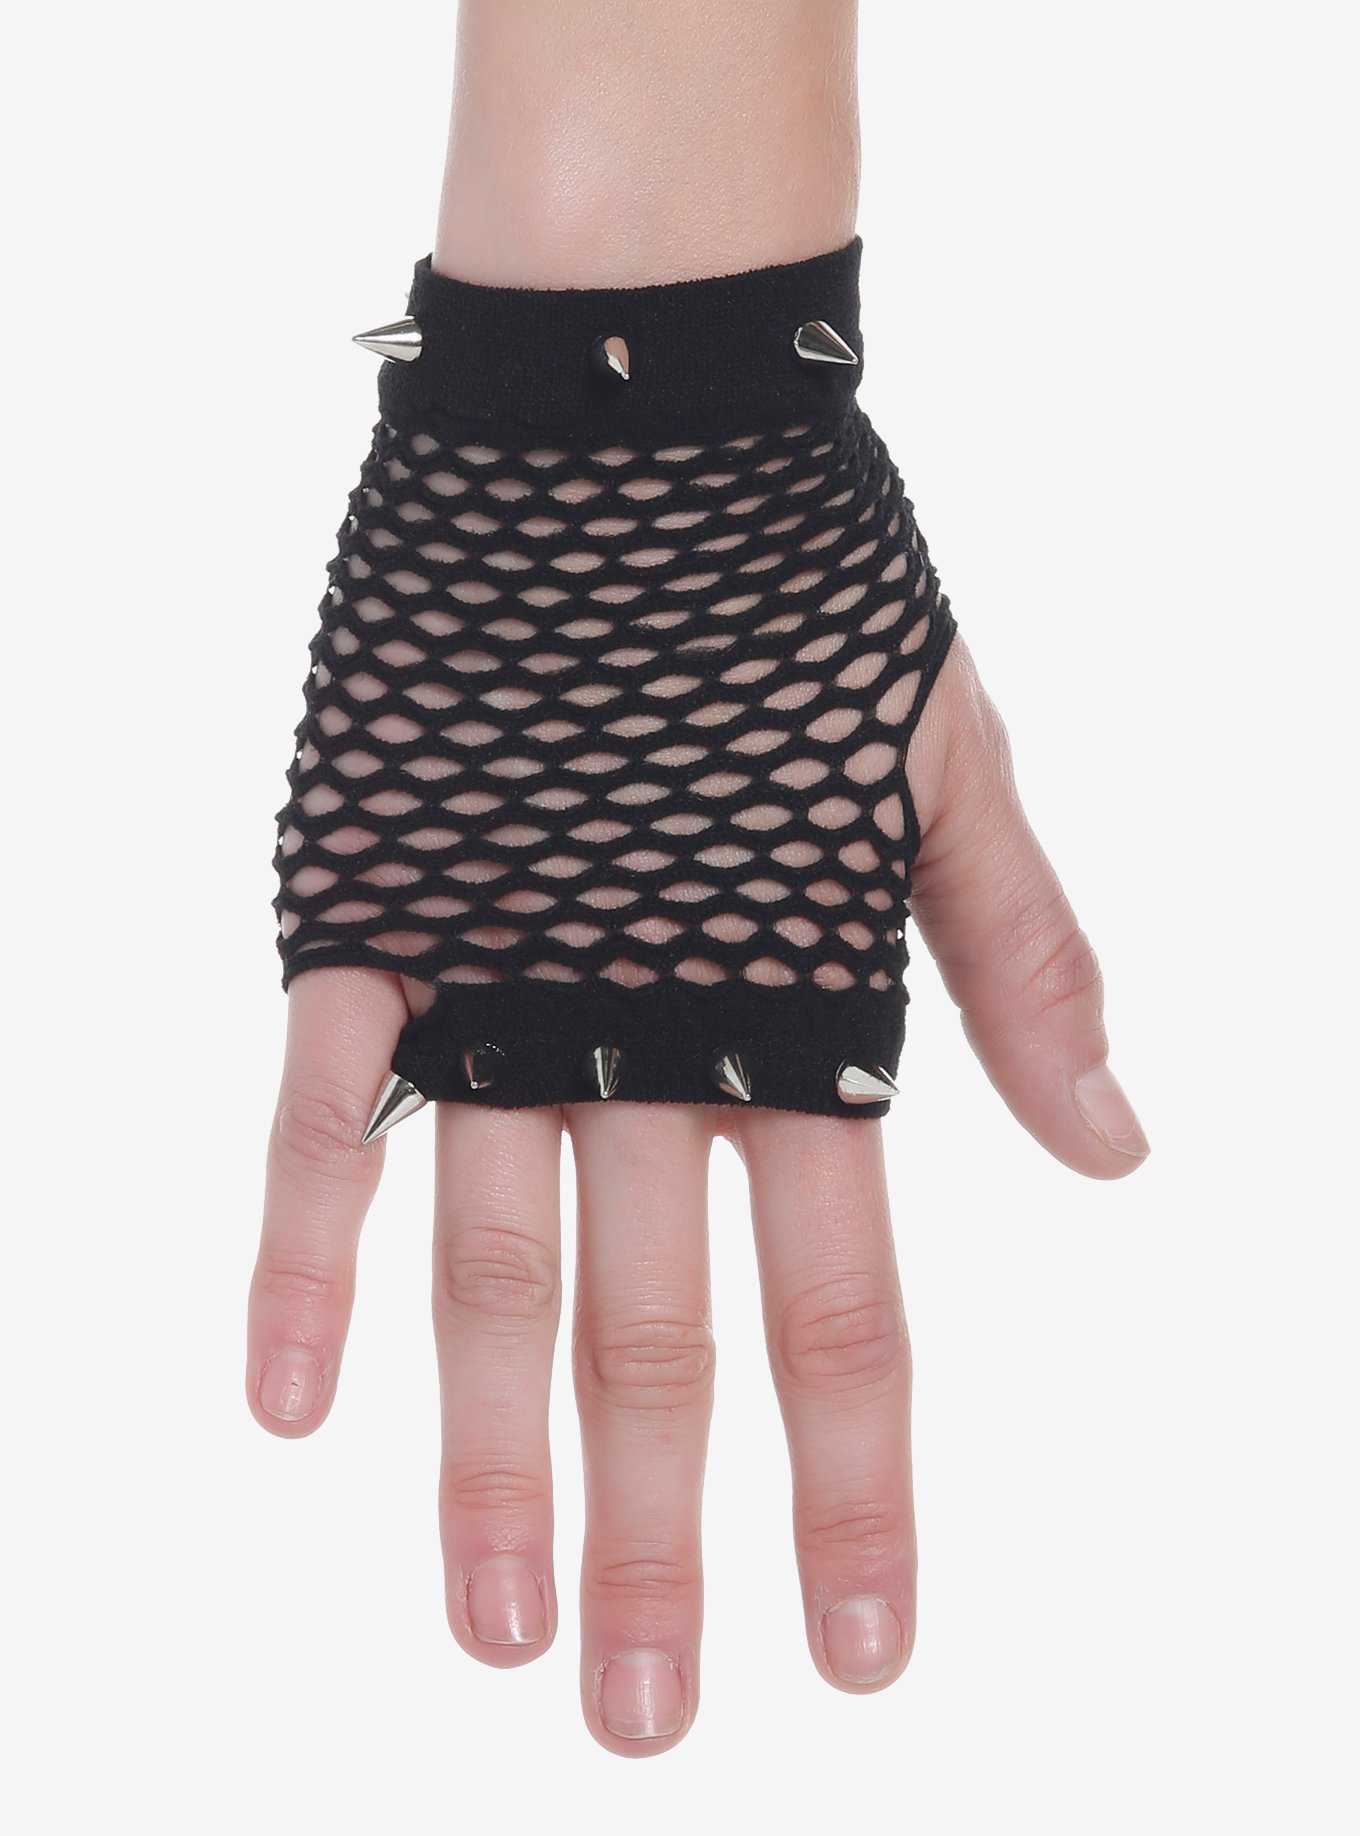 Studded Fishnet Fingerless Gloves, , hi-res